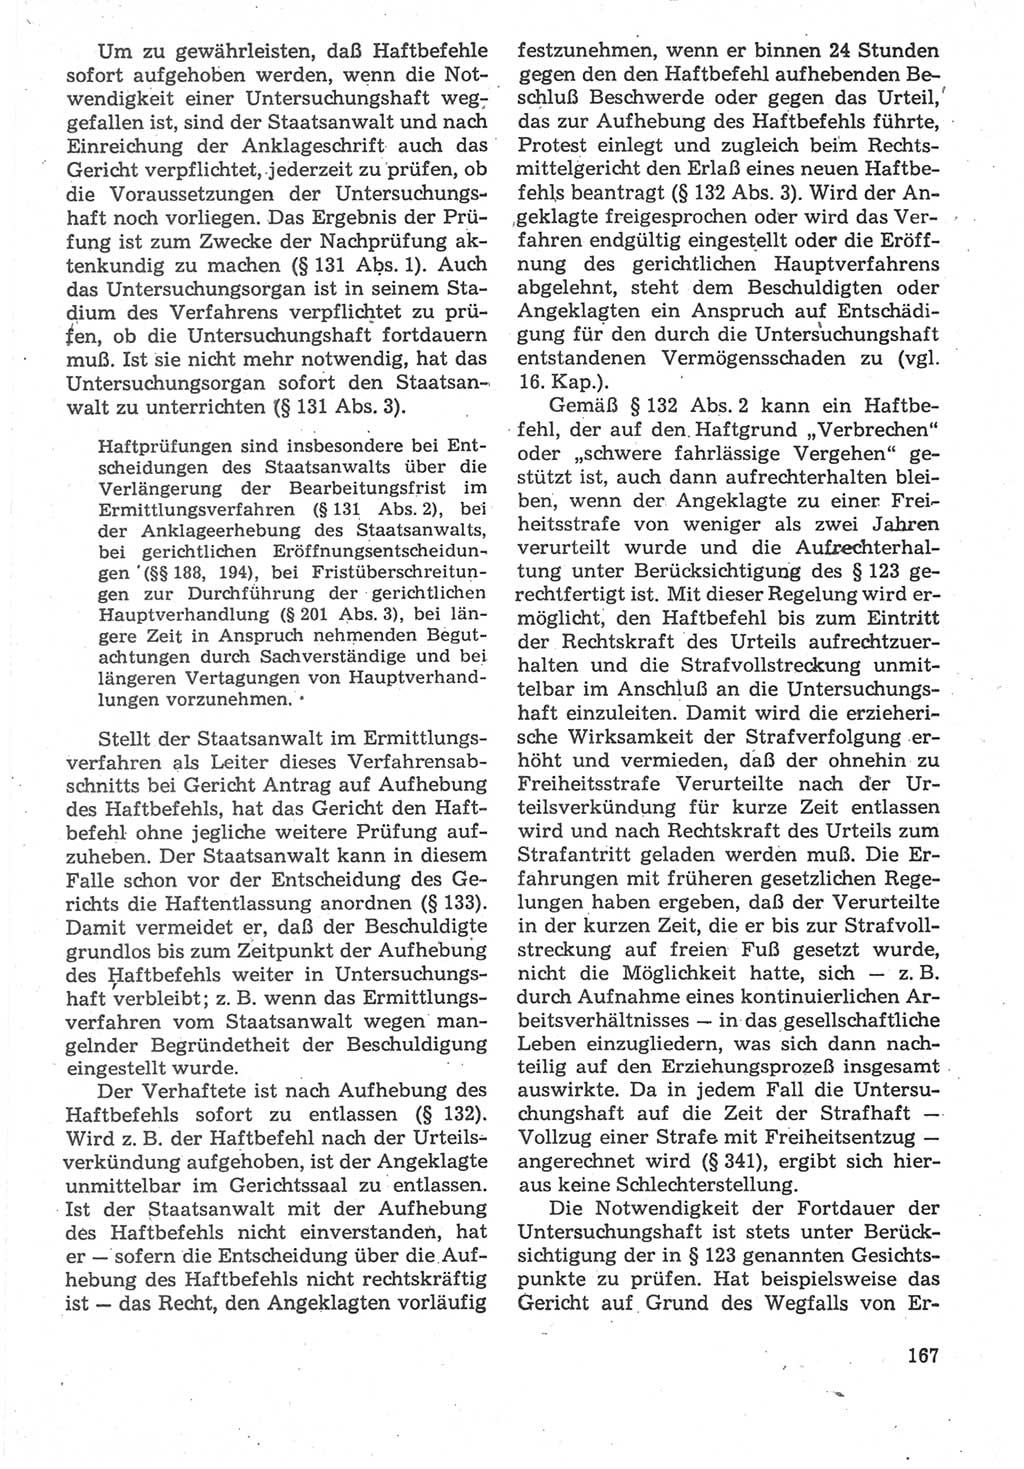 Strafverfahrensrecht [Deutsche Demokratische Republik (DDR)], Lehrbuch 1987, Seite 167 (Strafverf.-R. DDR Lb. 1987, S. 167)